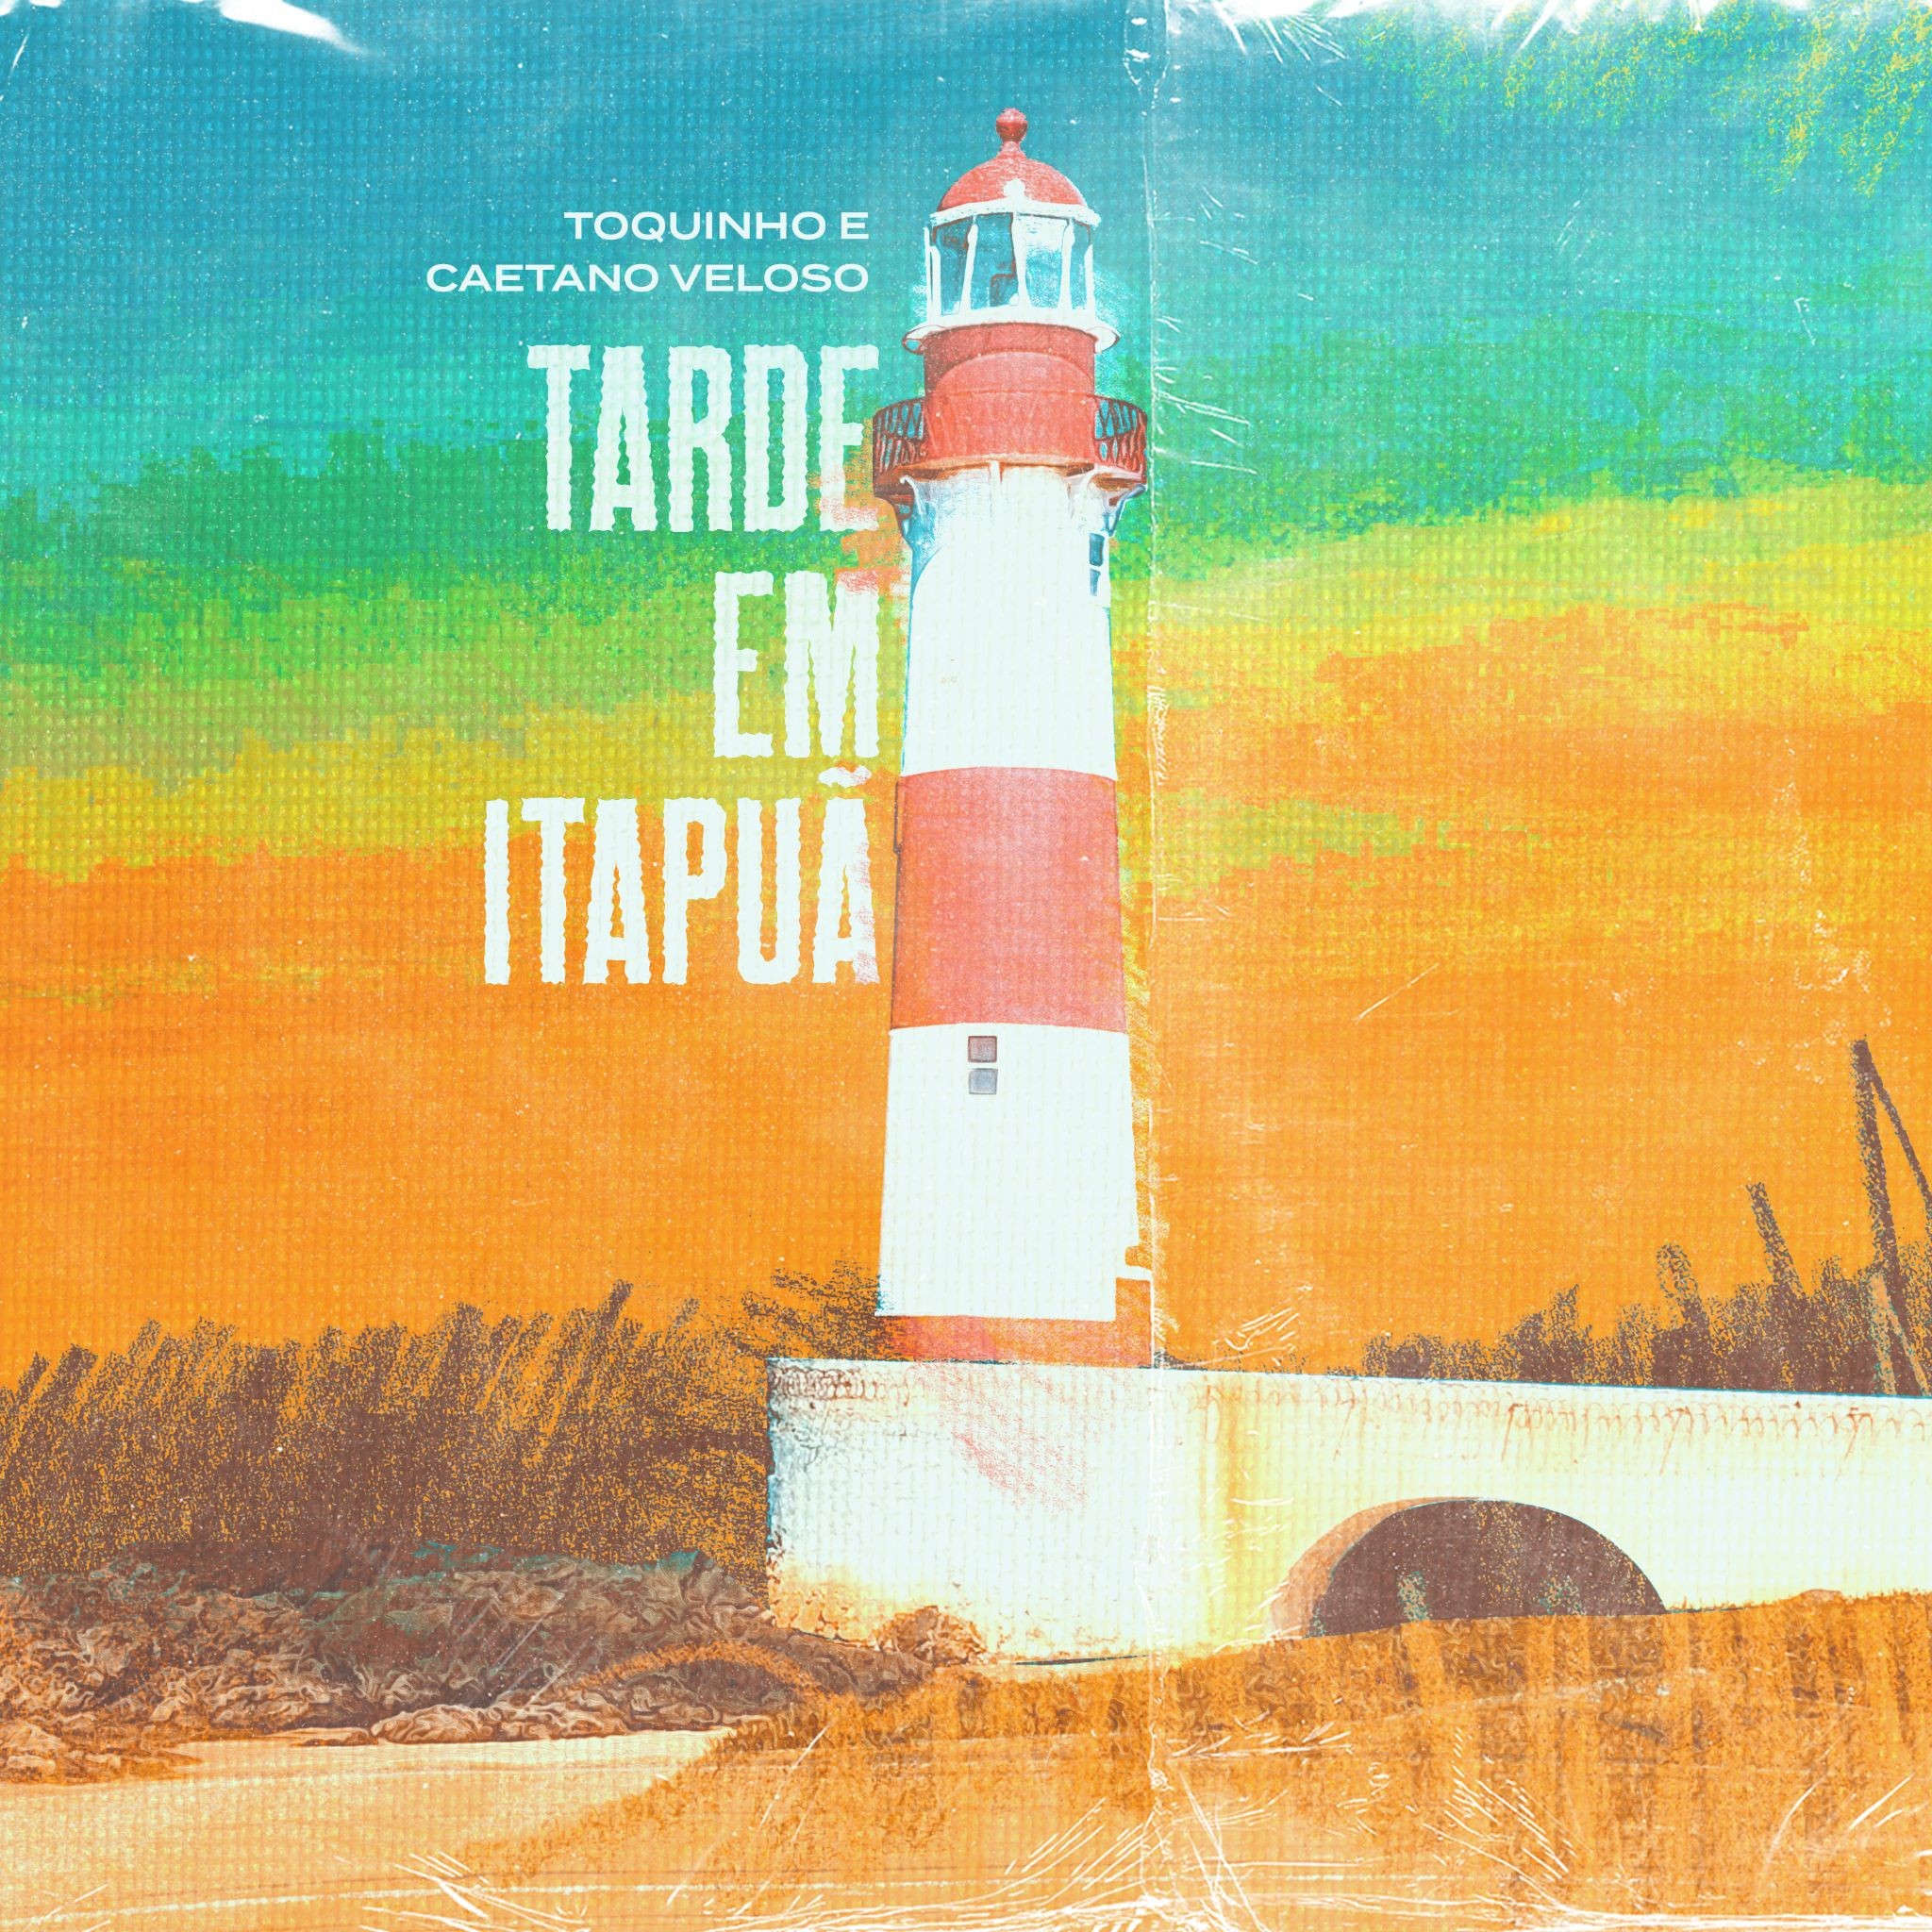  Capa do single 'Tarde em Itapuã', de Caetano Veloso com Toquinho